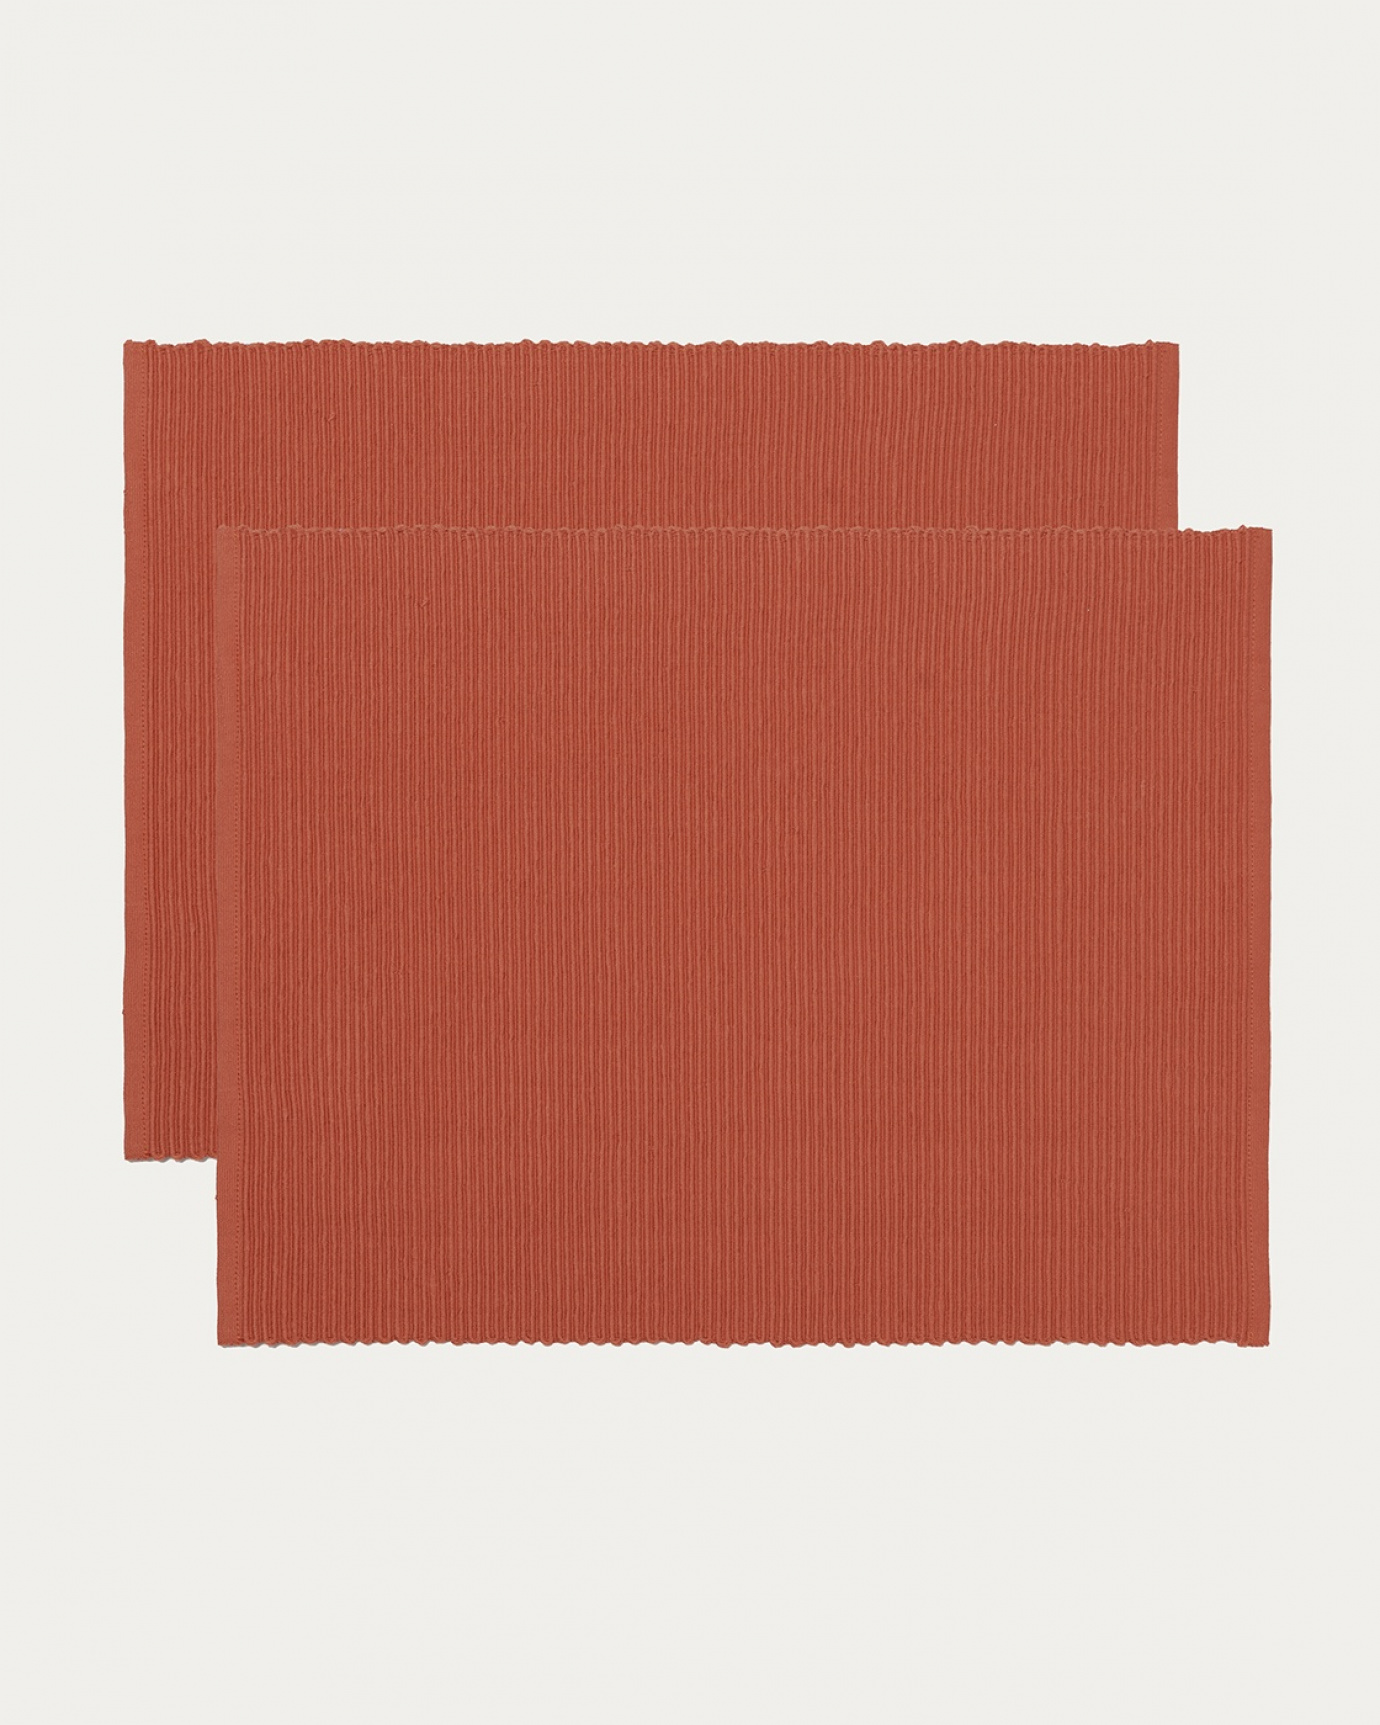 Immagine prodotto arancio arrugginito tovaglietta UNI in morbido cotone a costine di qualità di LINUM DESIGN. Dimensioni 35x46 cm e venduto in 2-pezzi.